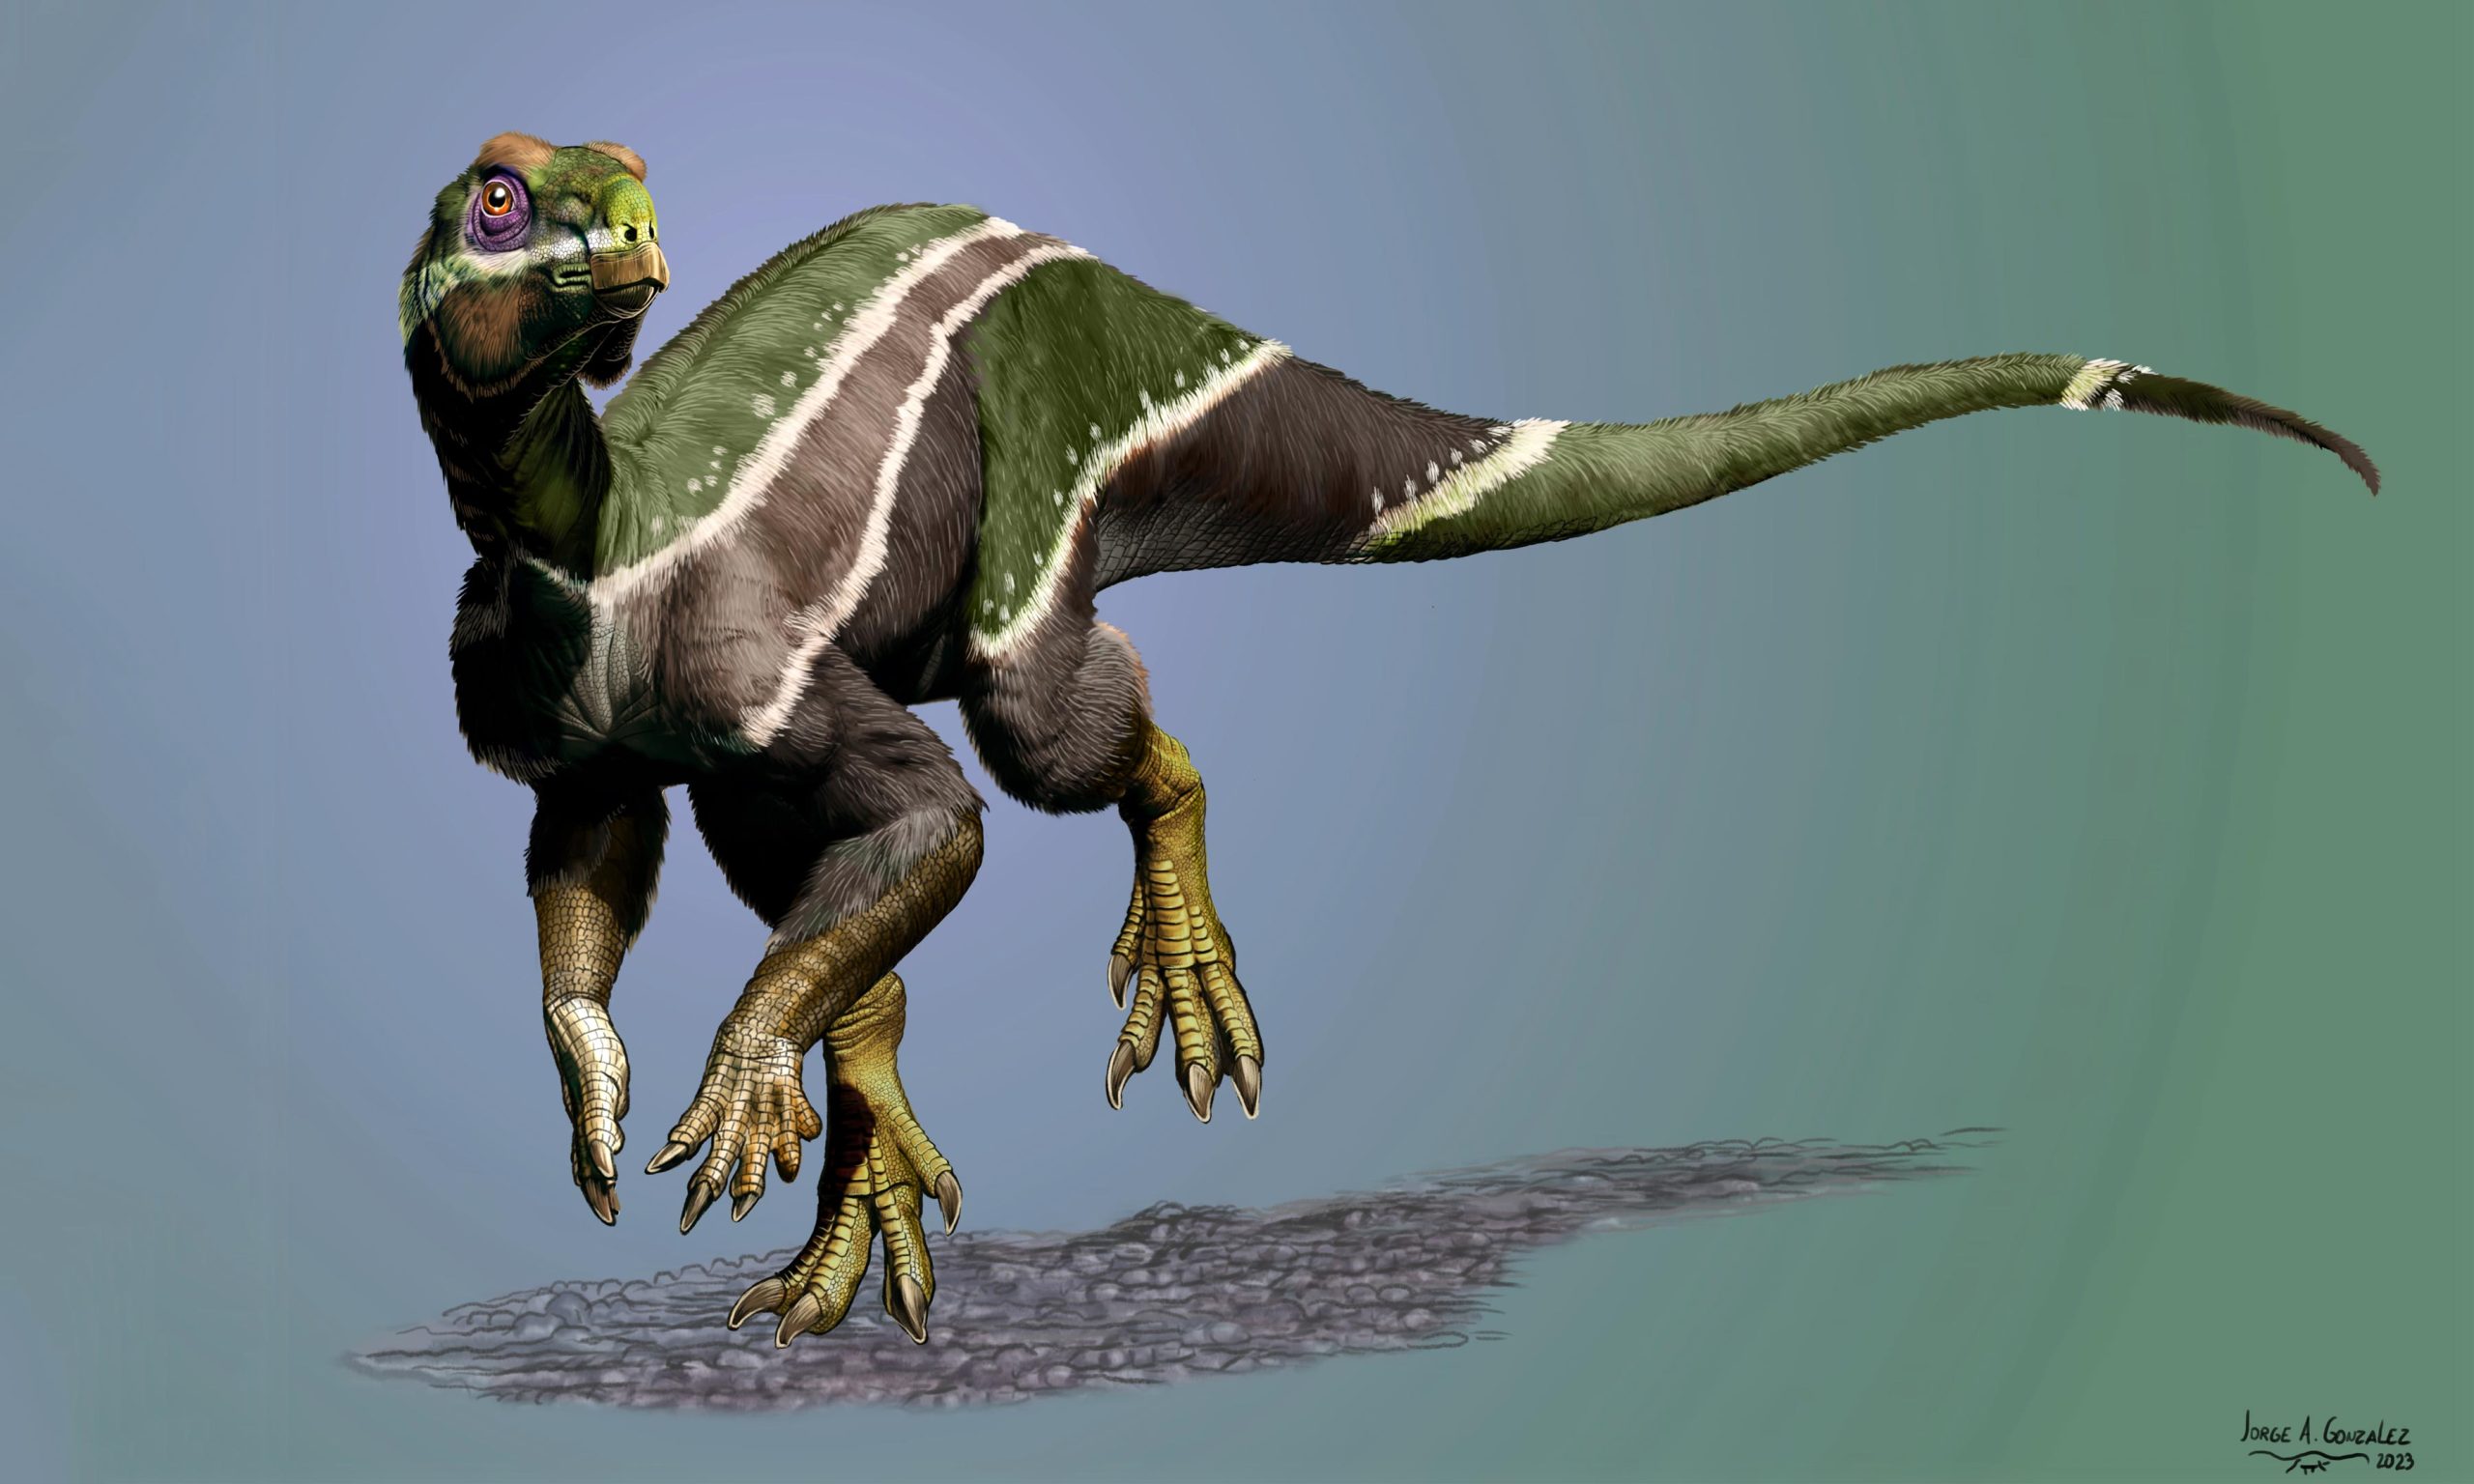 El dinosaurio recién descubierto Iani puede ser el «último suspiro» de la especie en un planeta cambiante